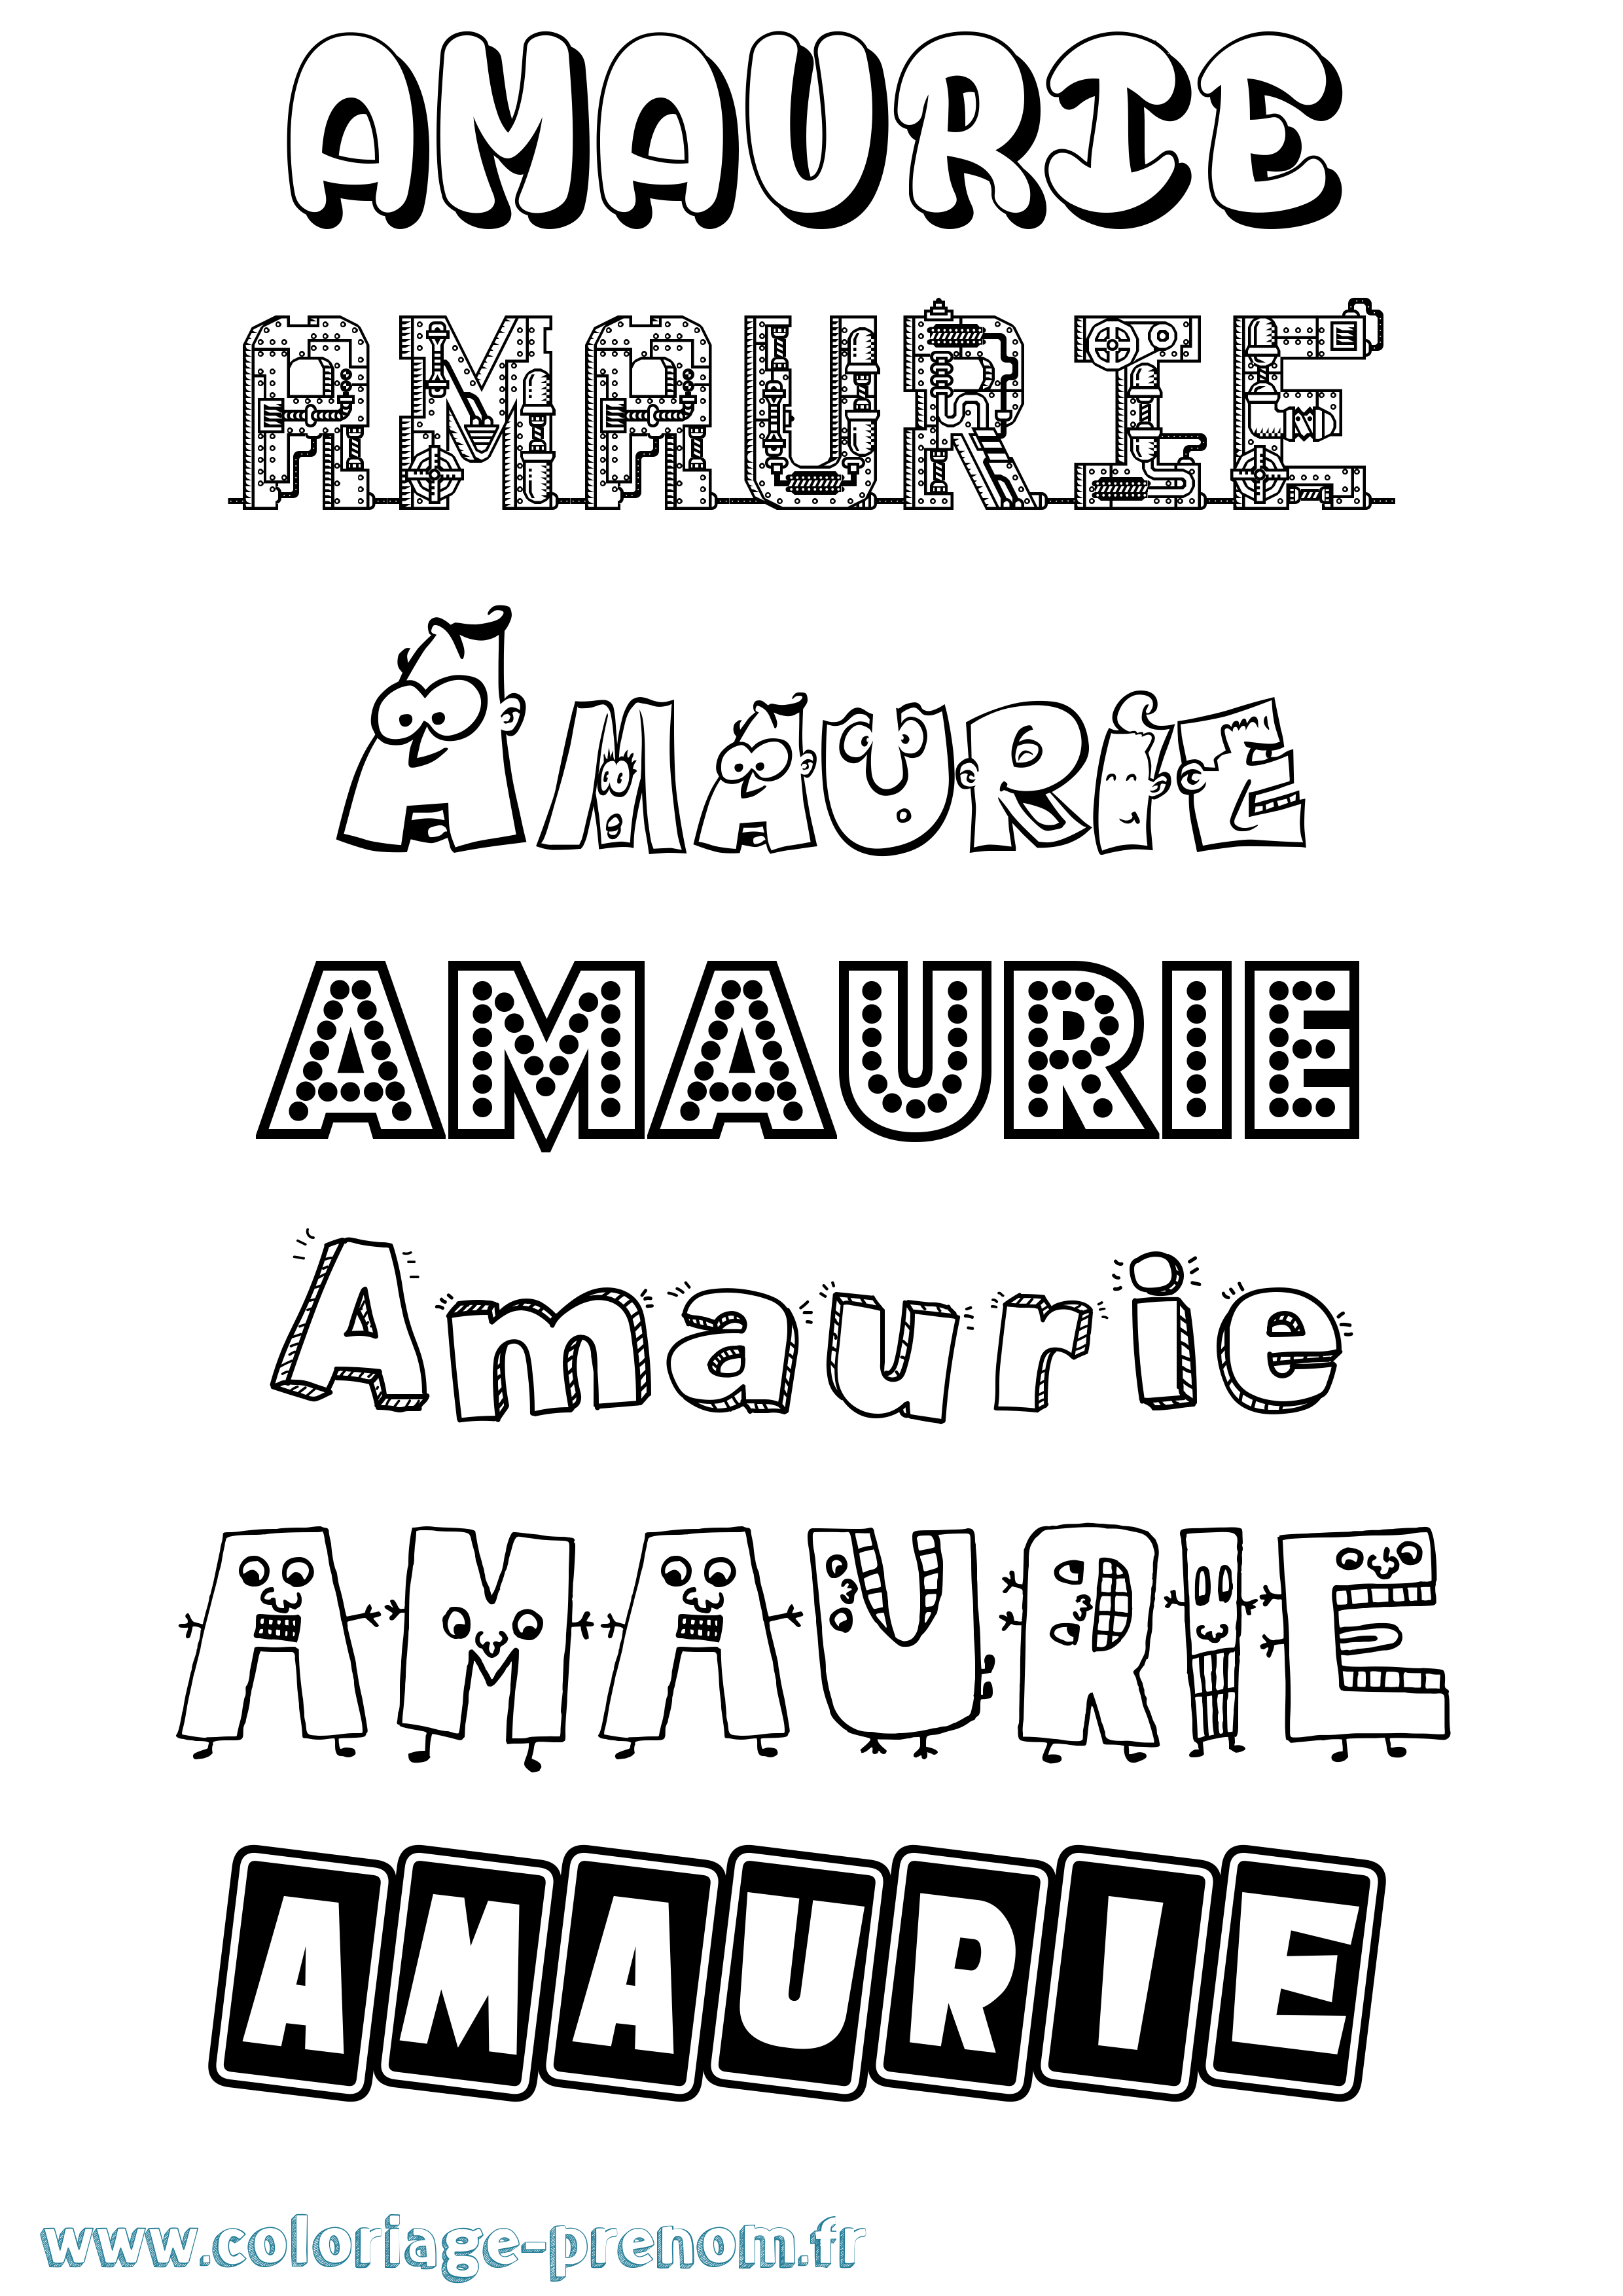 Coloriage prénom Amaurie Fun